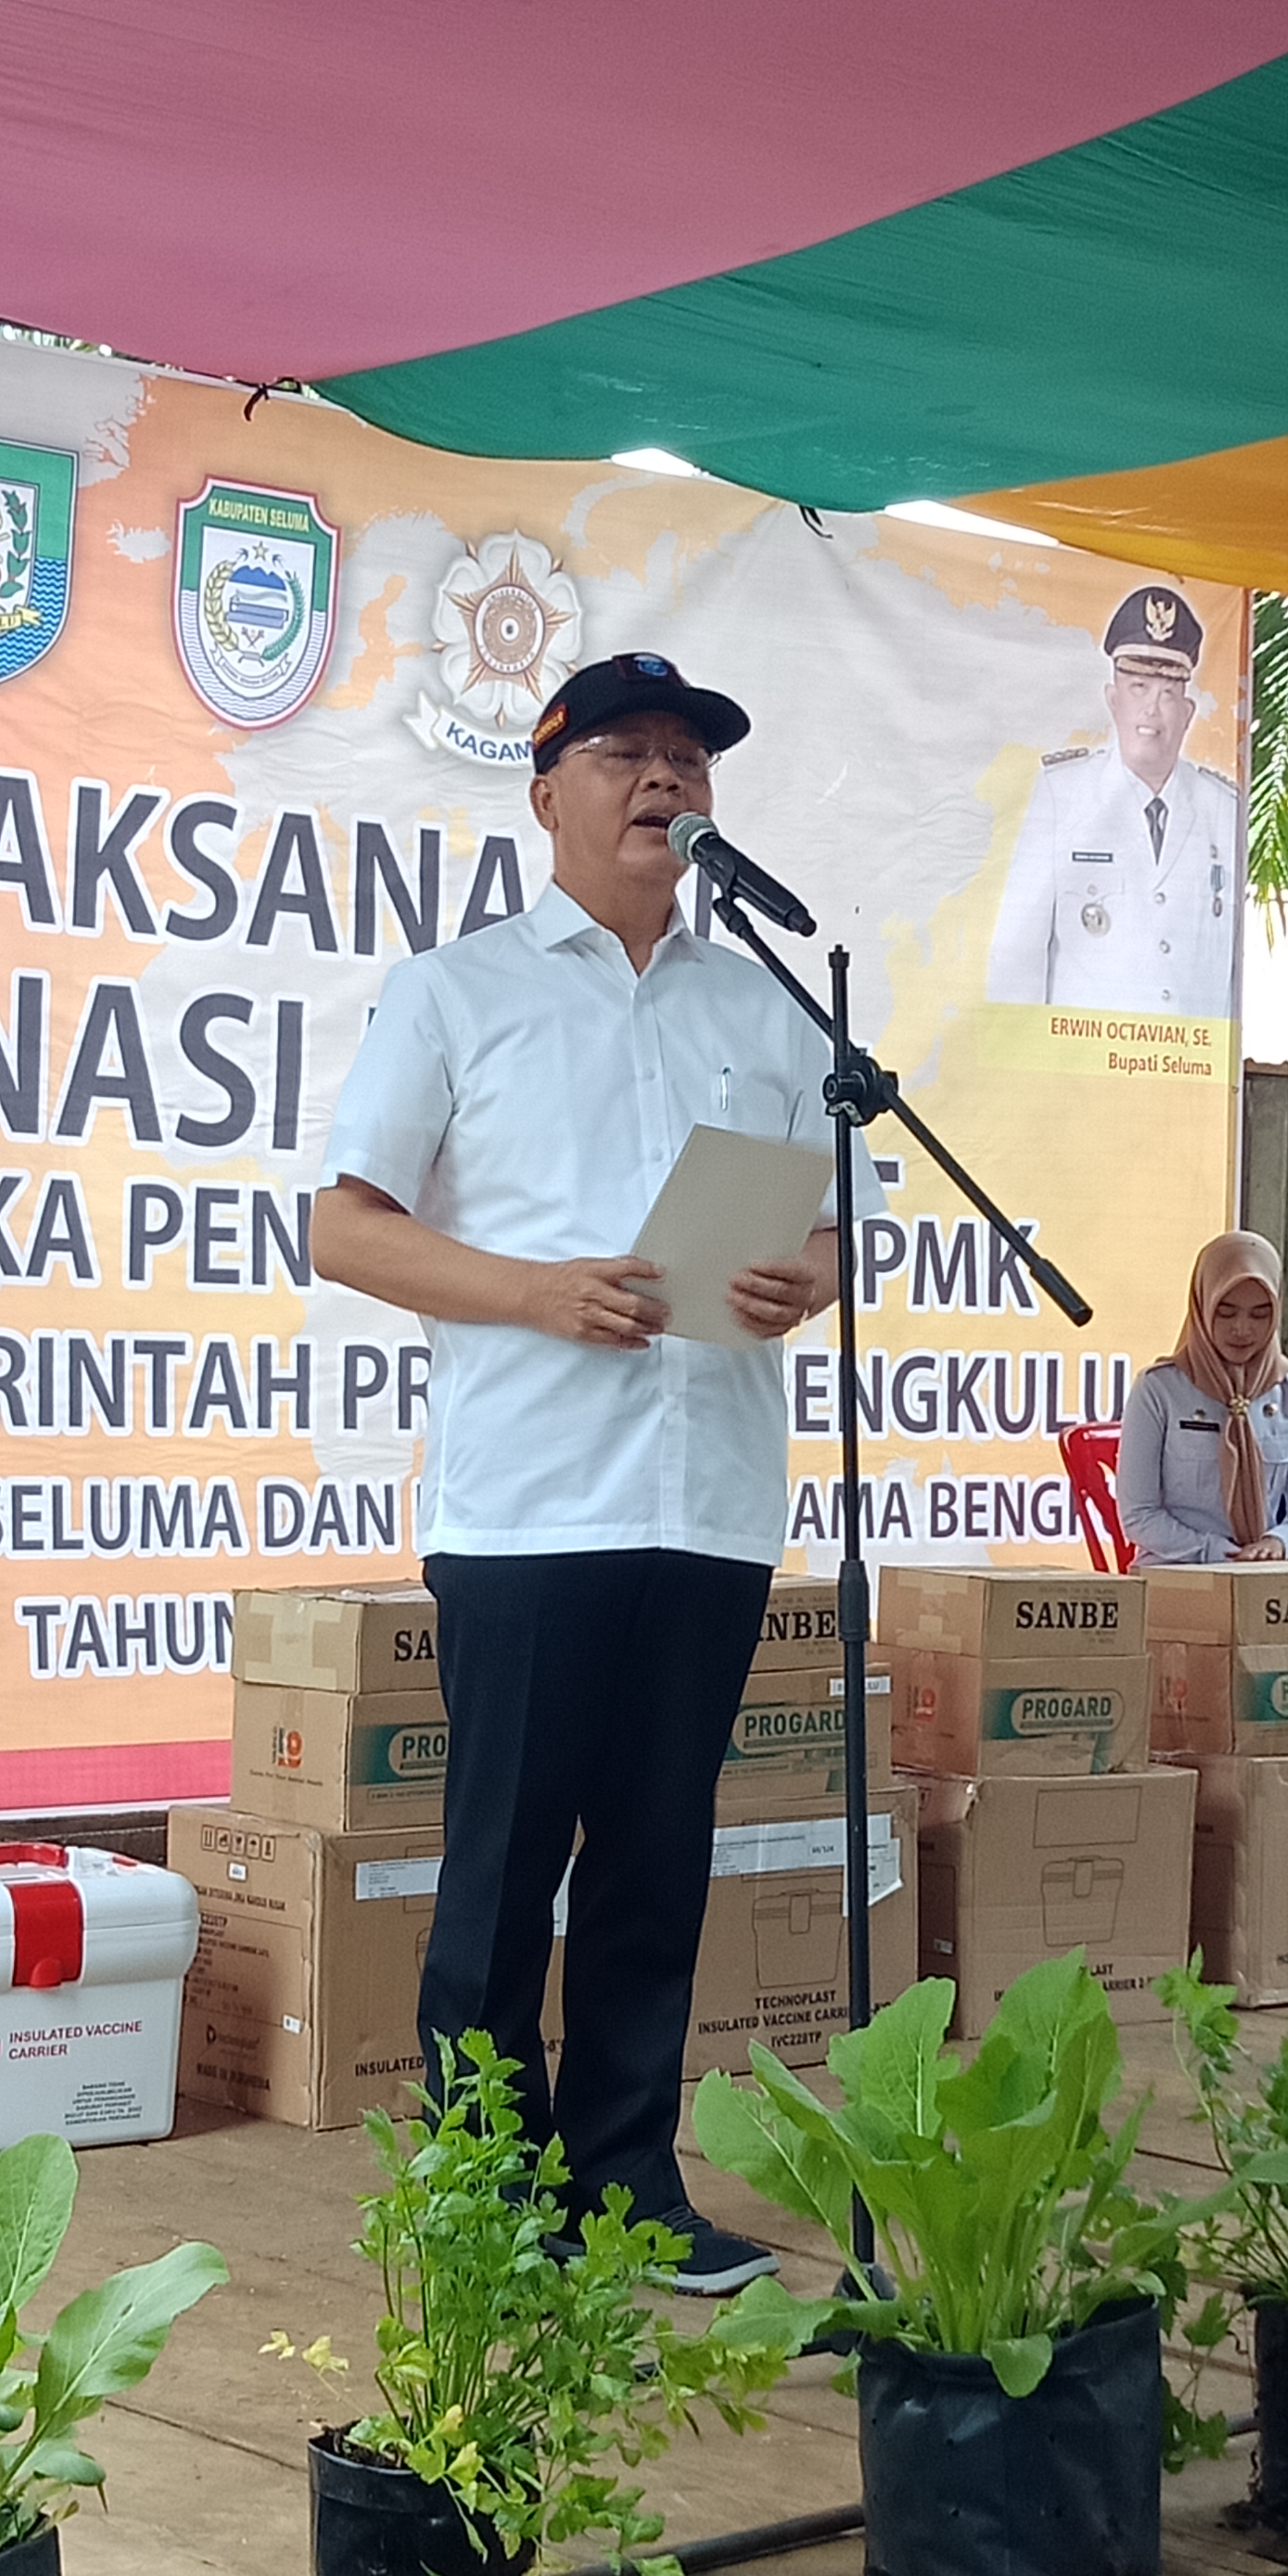  Hari Ini, Gubernur Bengkulu ke Seluma, Lakukan Titik Nol PPN